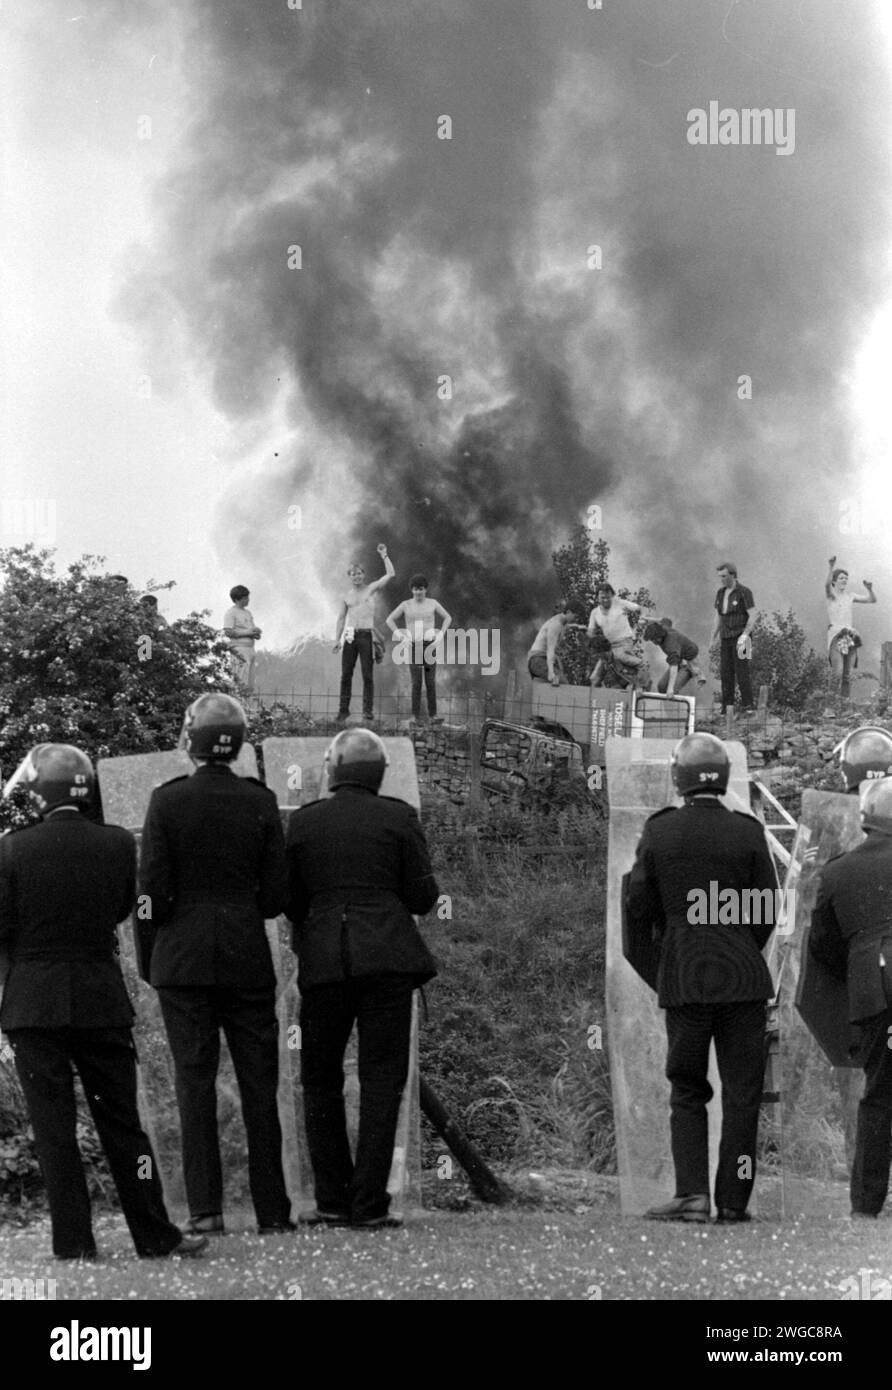 Aktenfoto vom 18. April 06/84, von der Polizei, die beobachtet, wie Streikposten vor dem Hintergrund brennender Autos in der Orgreave Coke Works, Yorkshire, gegenüberstehen. Die Forderung nach einer öffentlichen Untersuchung der Ereignisse an einem der gewalttätigsten Tage des jahrelangen Bergarbeiterstreiks wird verstärkt, nachdem im Fernsehen neue Aufnahmen von Zusammenstößen zwischen Polizei und Streikposten aufgezeichnet wurden. Die gewalttätige Konfrontation im Juni 1984 vor einem Kokerei in Orgreave, Yorkshire, führte dazu, dass viele Bergleute verletzt und verhaftet wurden, obwohl ihre Prozesse später zusammenbrachen. Ein dreiteiliger Channel 4-Dokumentarfilm über den Bergarbeiterstreik konzentrierte sich auf den so-Call Stockfoto